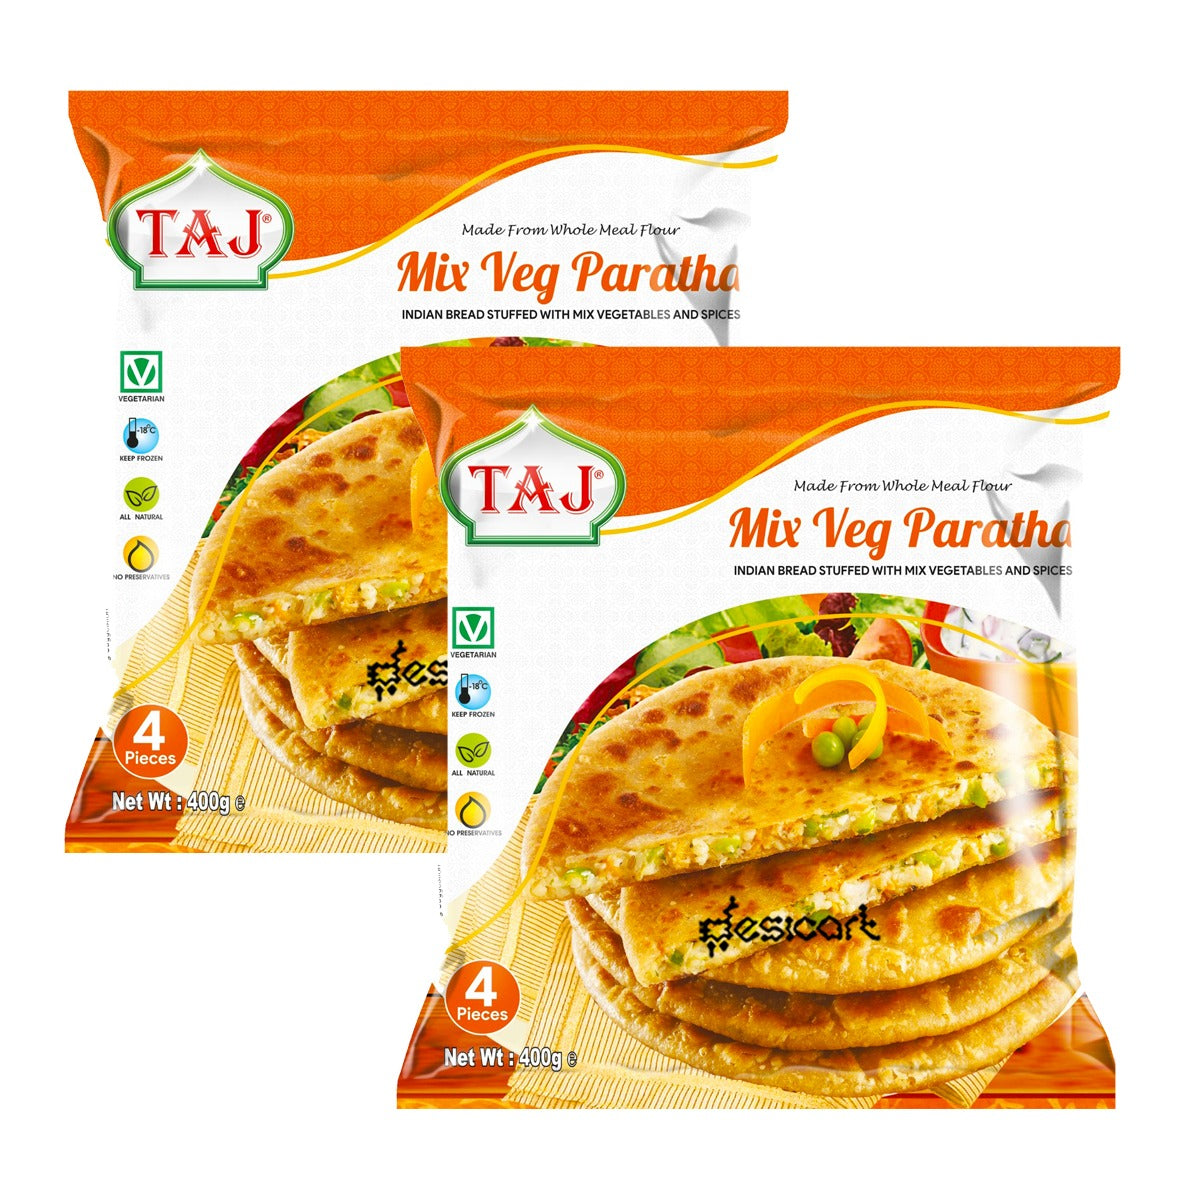 Taj Mix veg Paratha pack of 2 400g